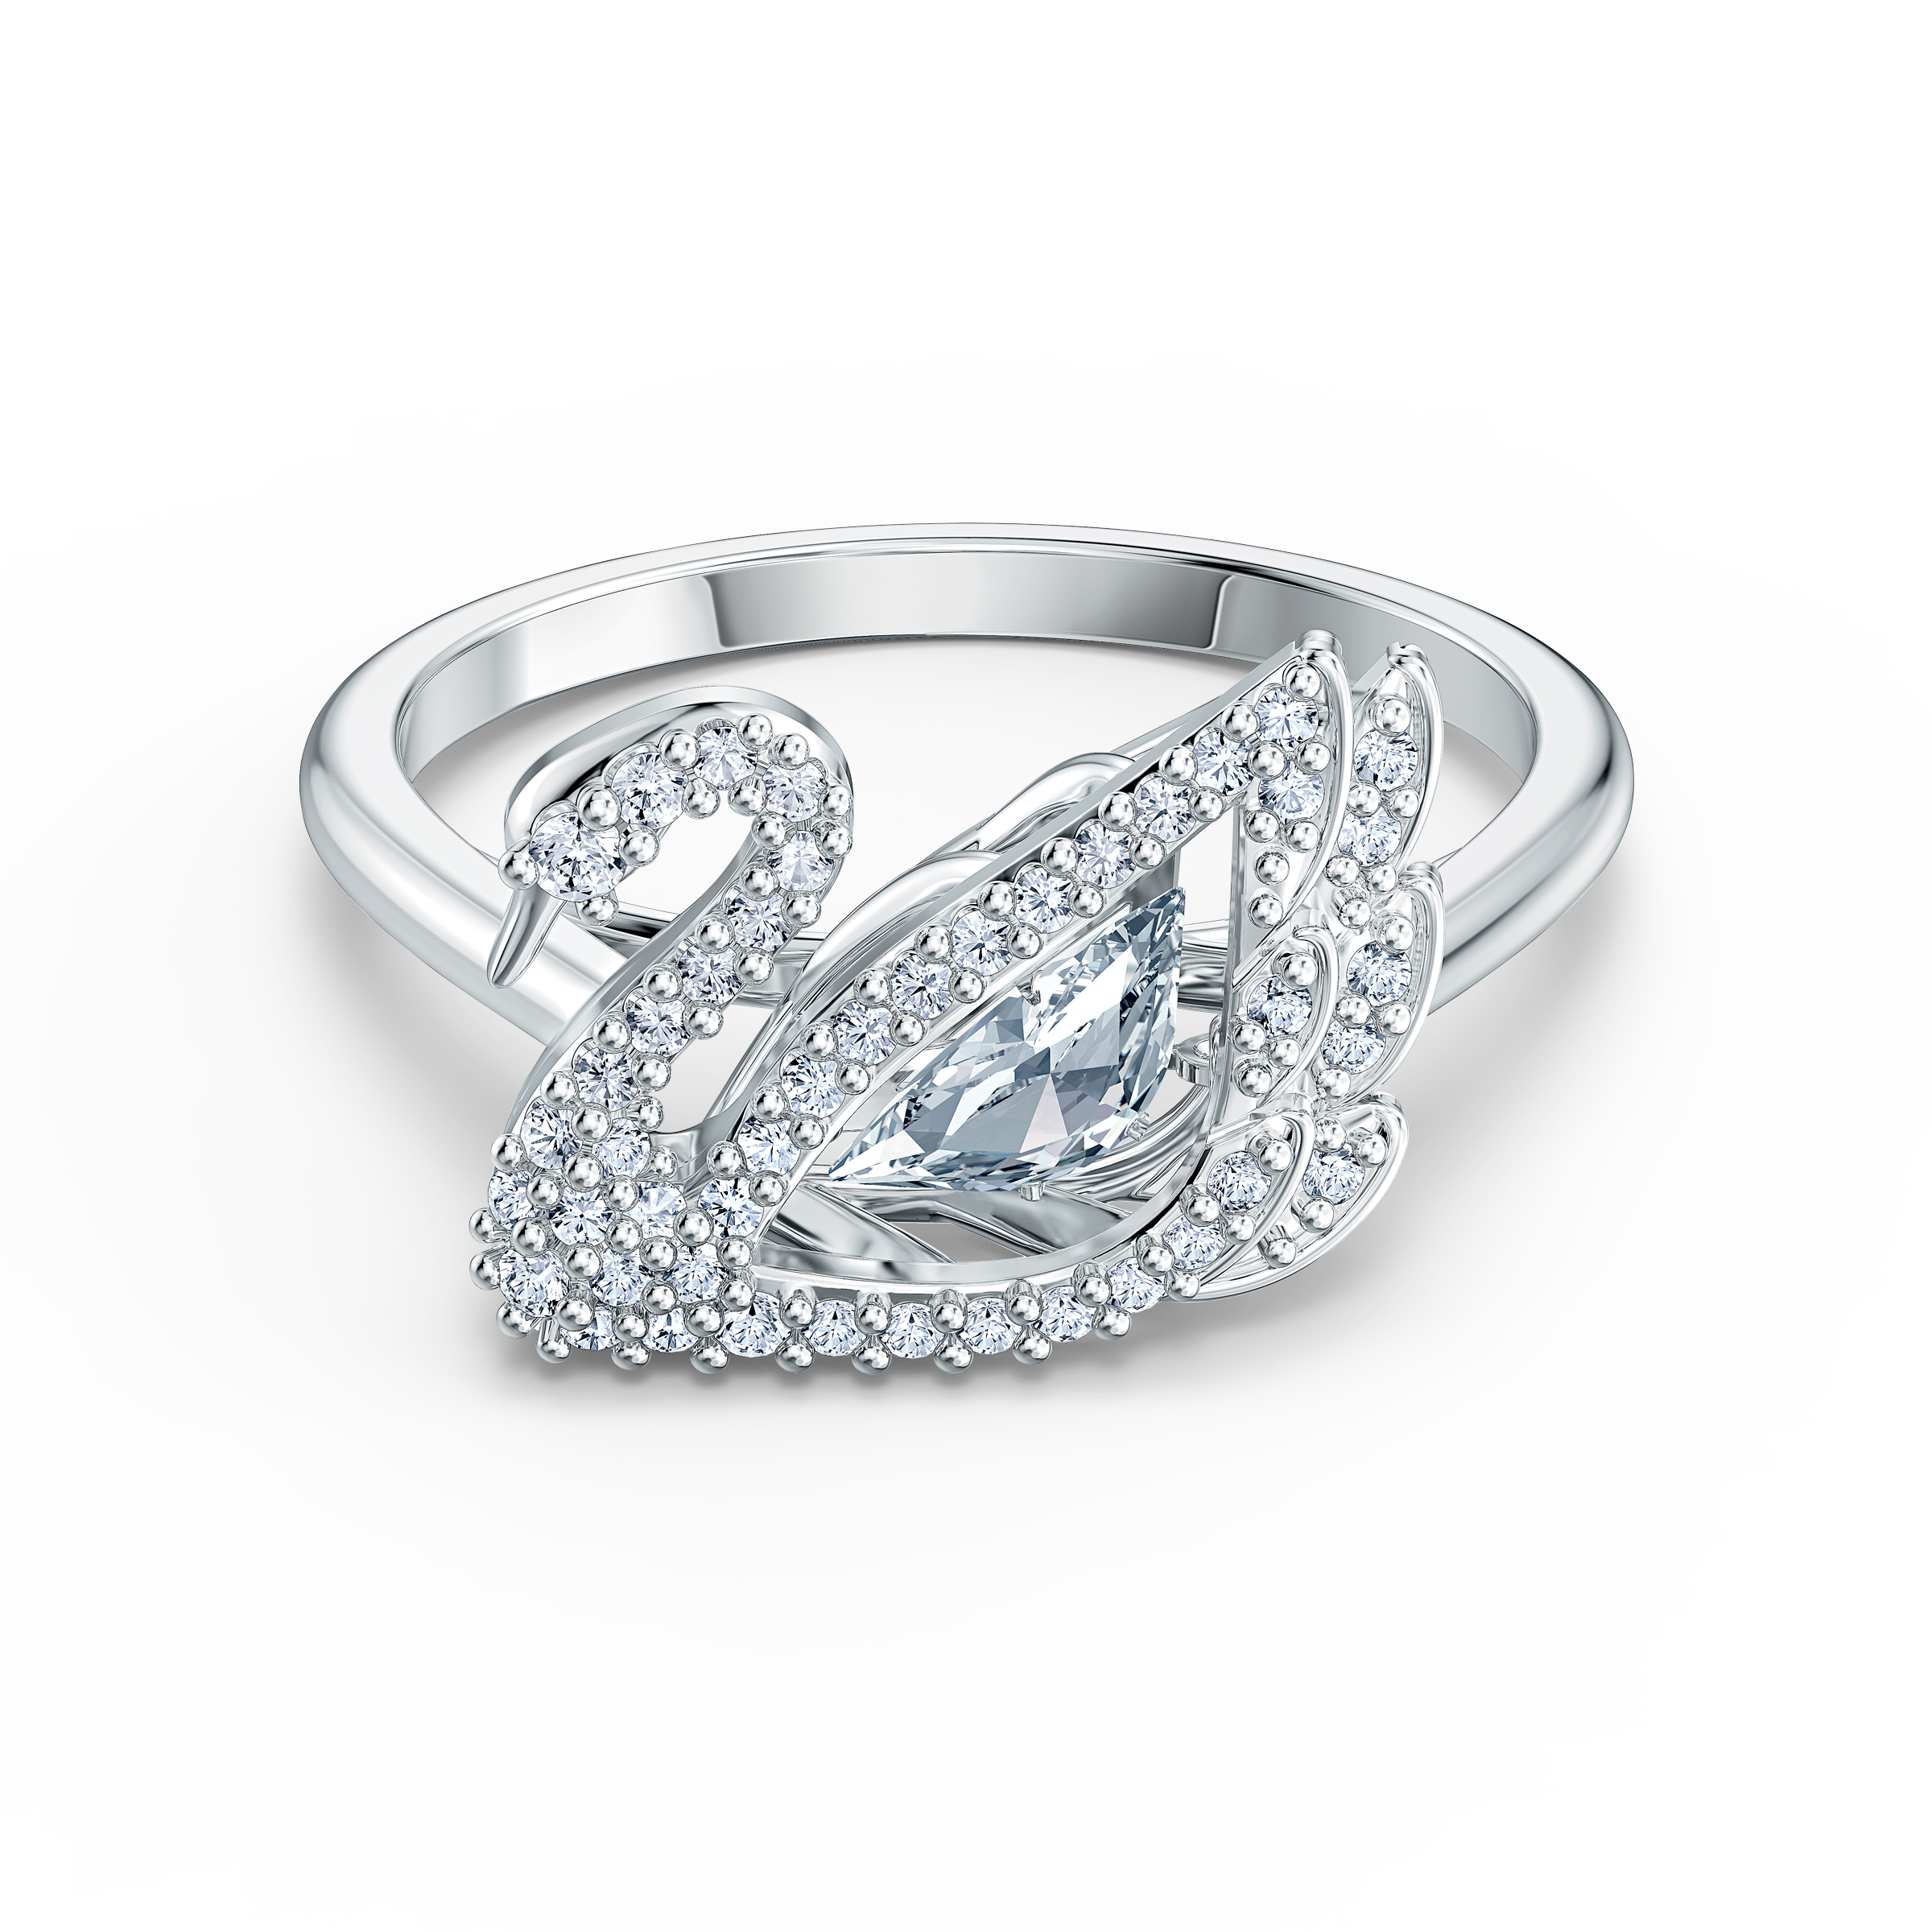 高清图|施华洛世奇FRISSON MIXED CUTS 戒指, 白色, 镀玫瑰金色戒指图片3|腕表之家-珠宝